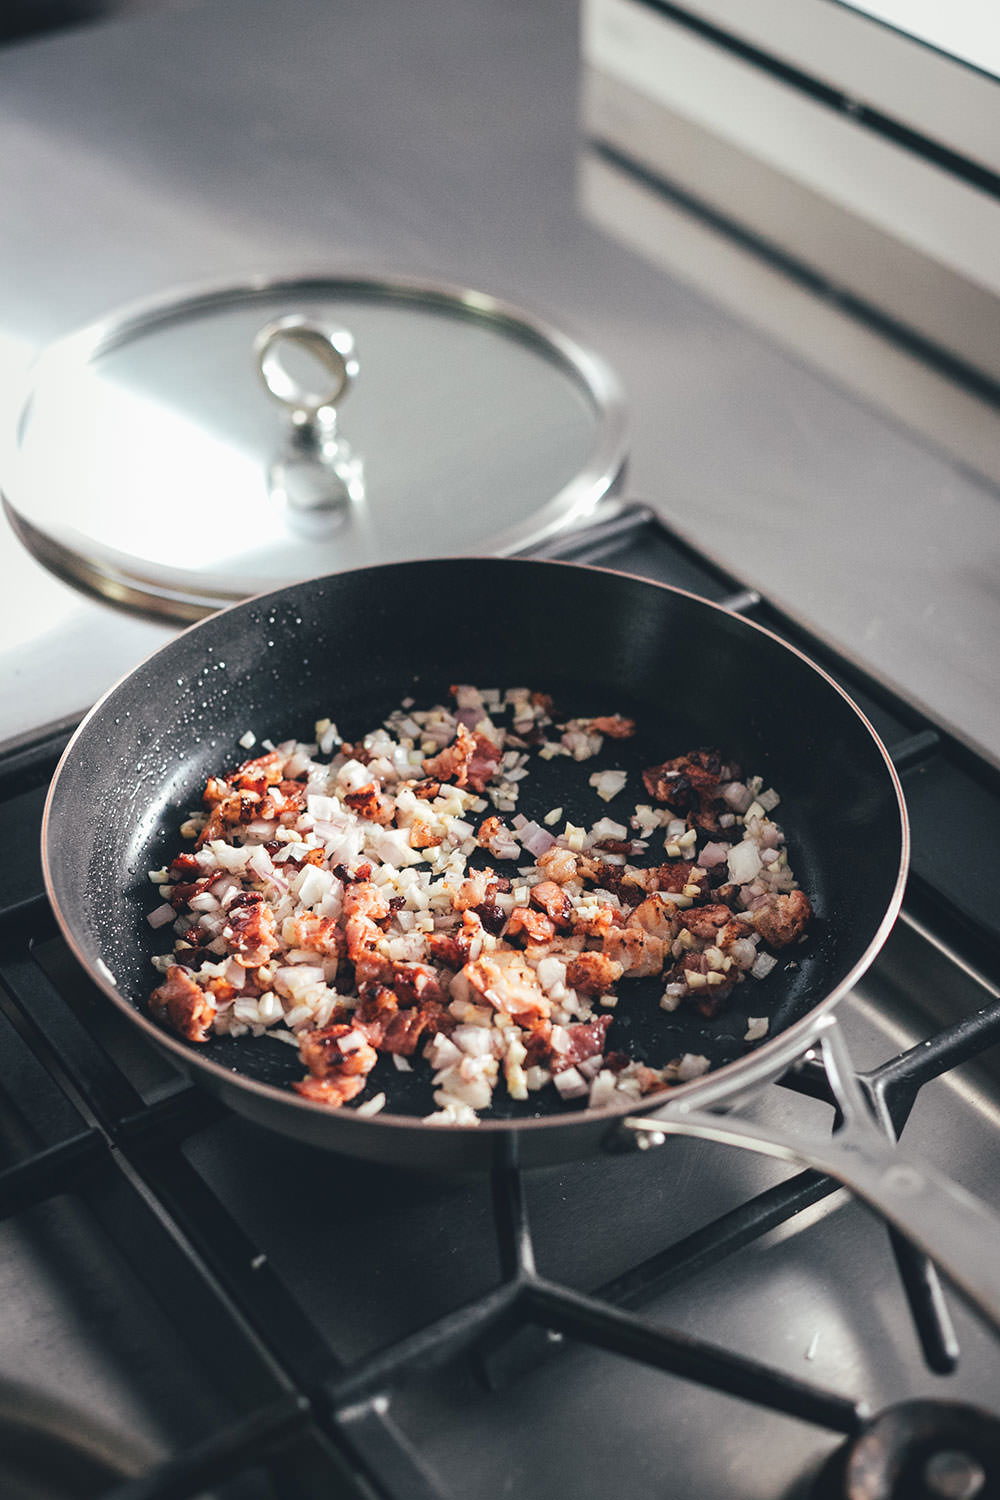 Rezept für One Pan Ravioli mit Bacon, Mett und Spinat in Sahnesauce | schnelle Feierabendküche | moeyskitchen.com #rezept #kochen #feierabendküche #schnellerezepte #onepan #onepot #ravioli #foodblogger #pasta